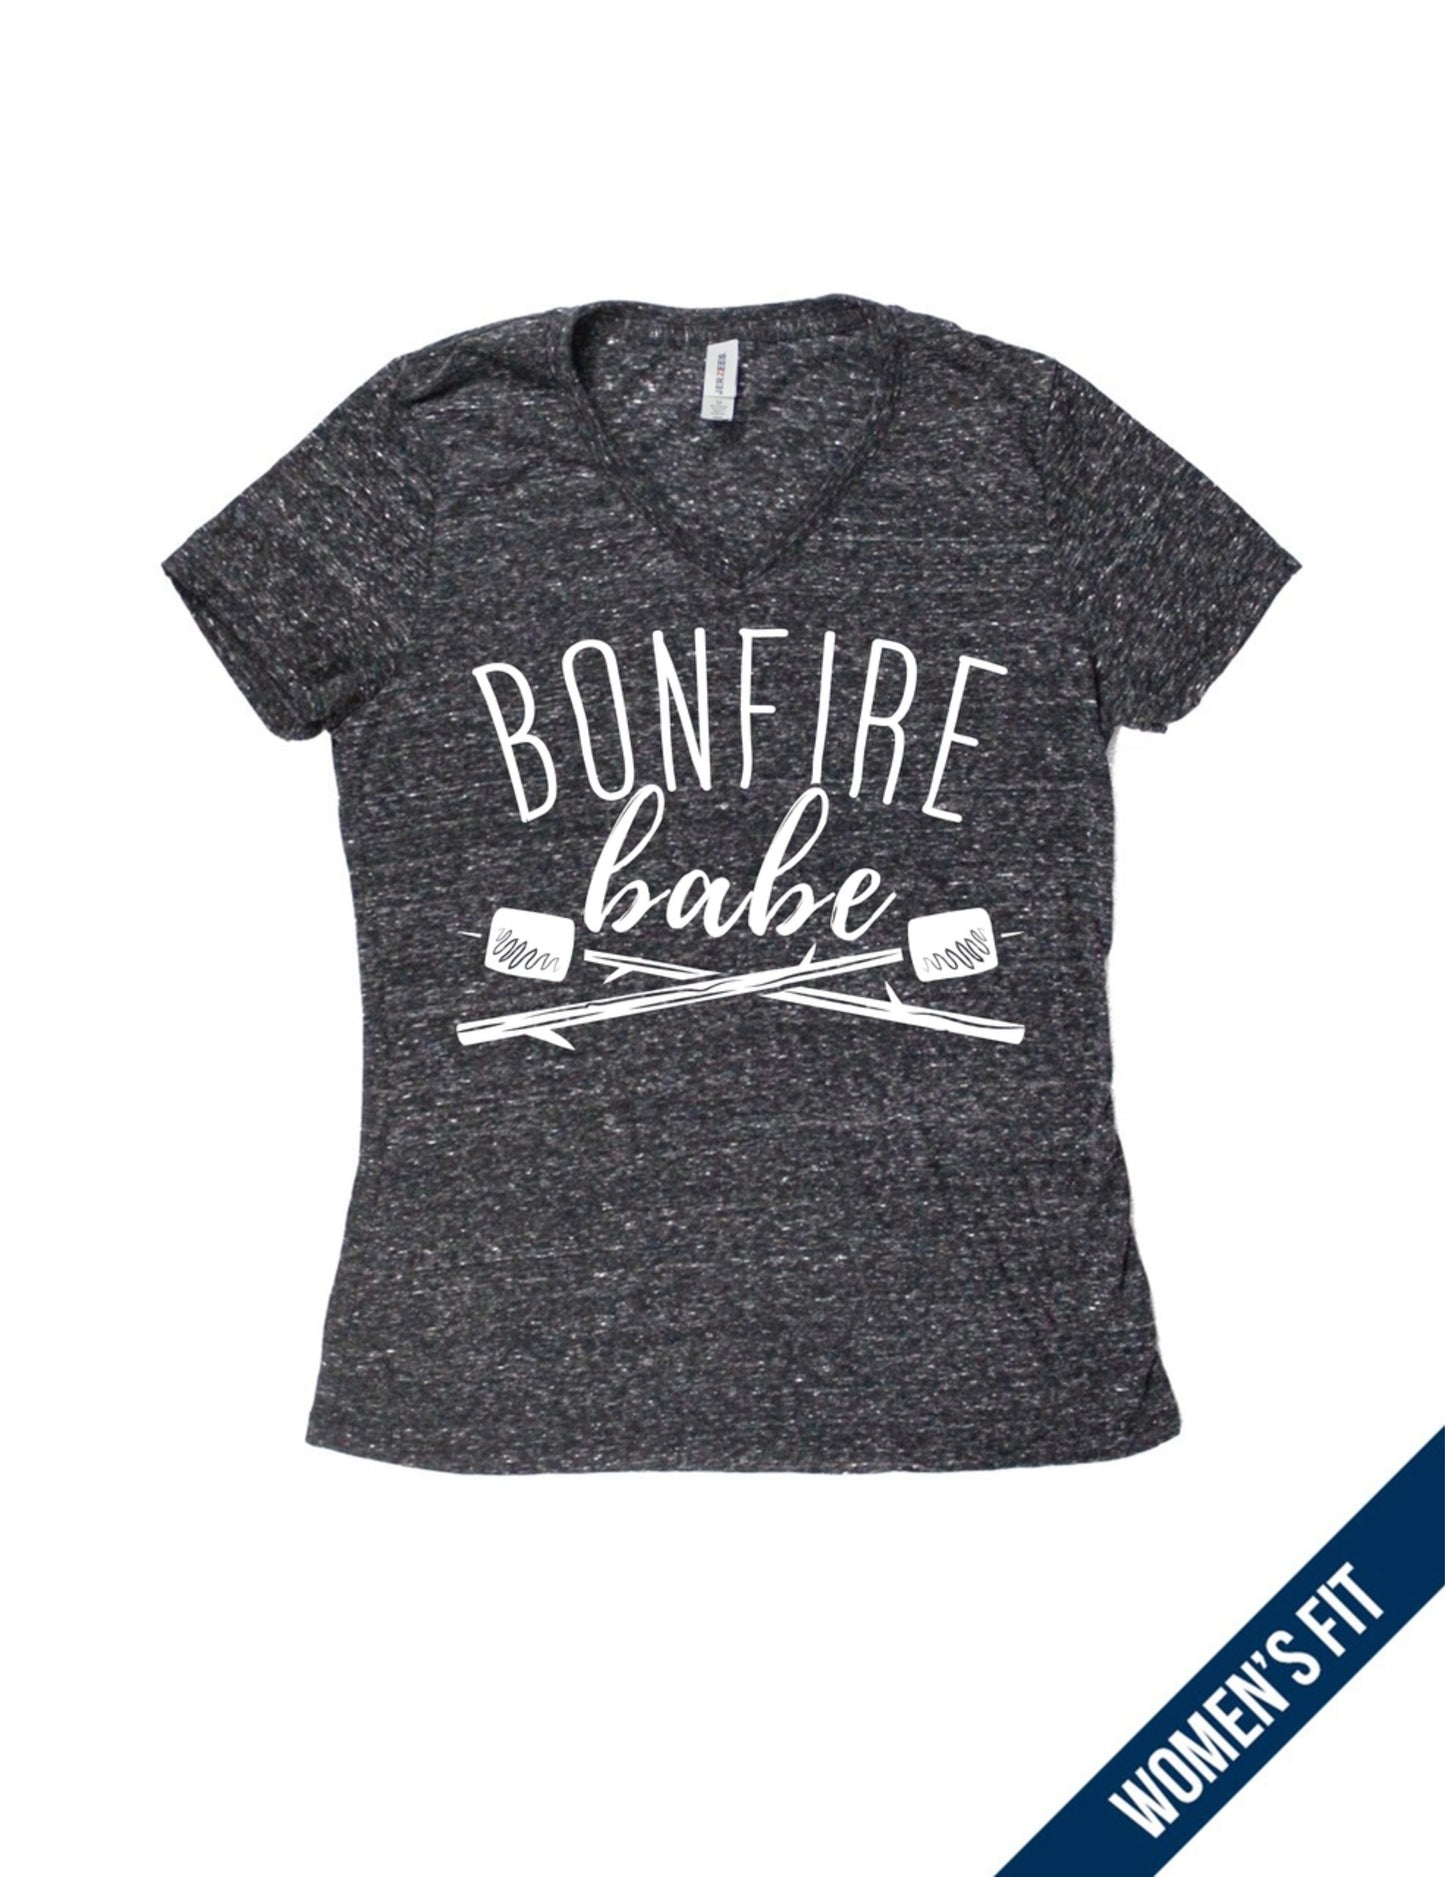 Ladies Tee Bonfire Babe